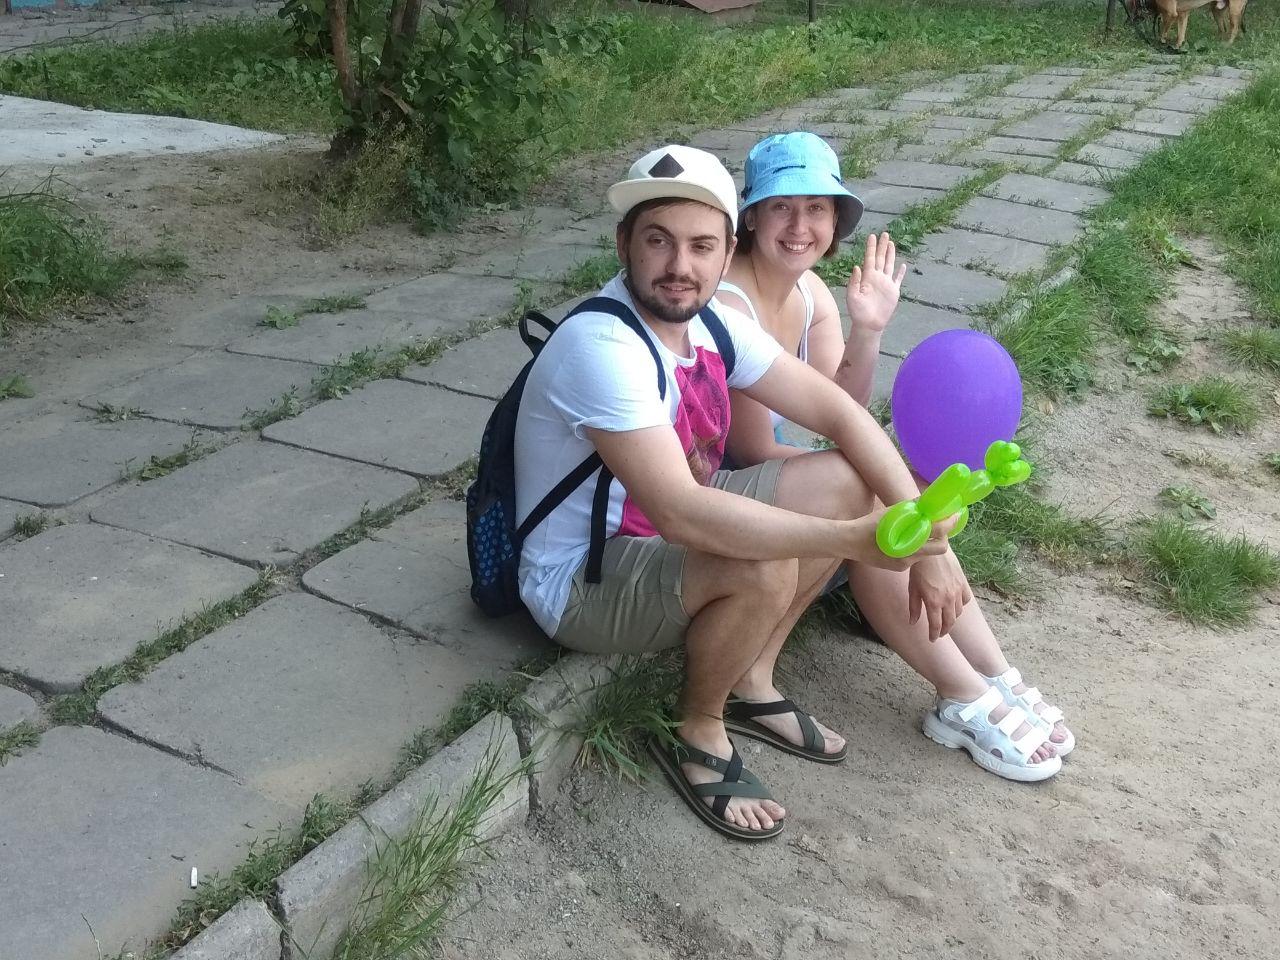 Дмитрий Серый: "Наши дети заслуживают быть счастливыми!" (ФОТО)